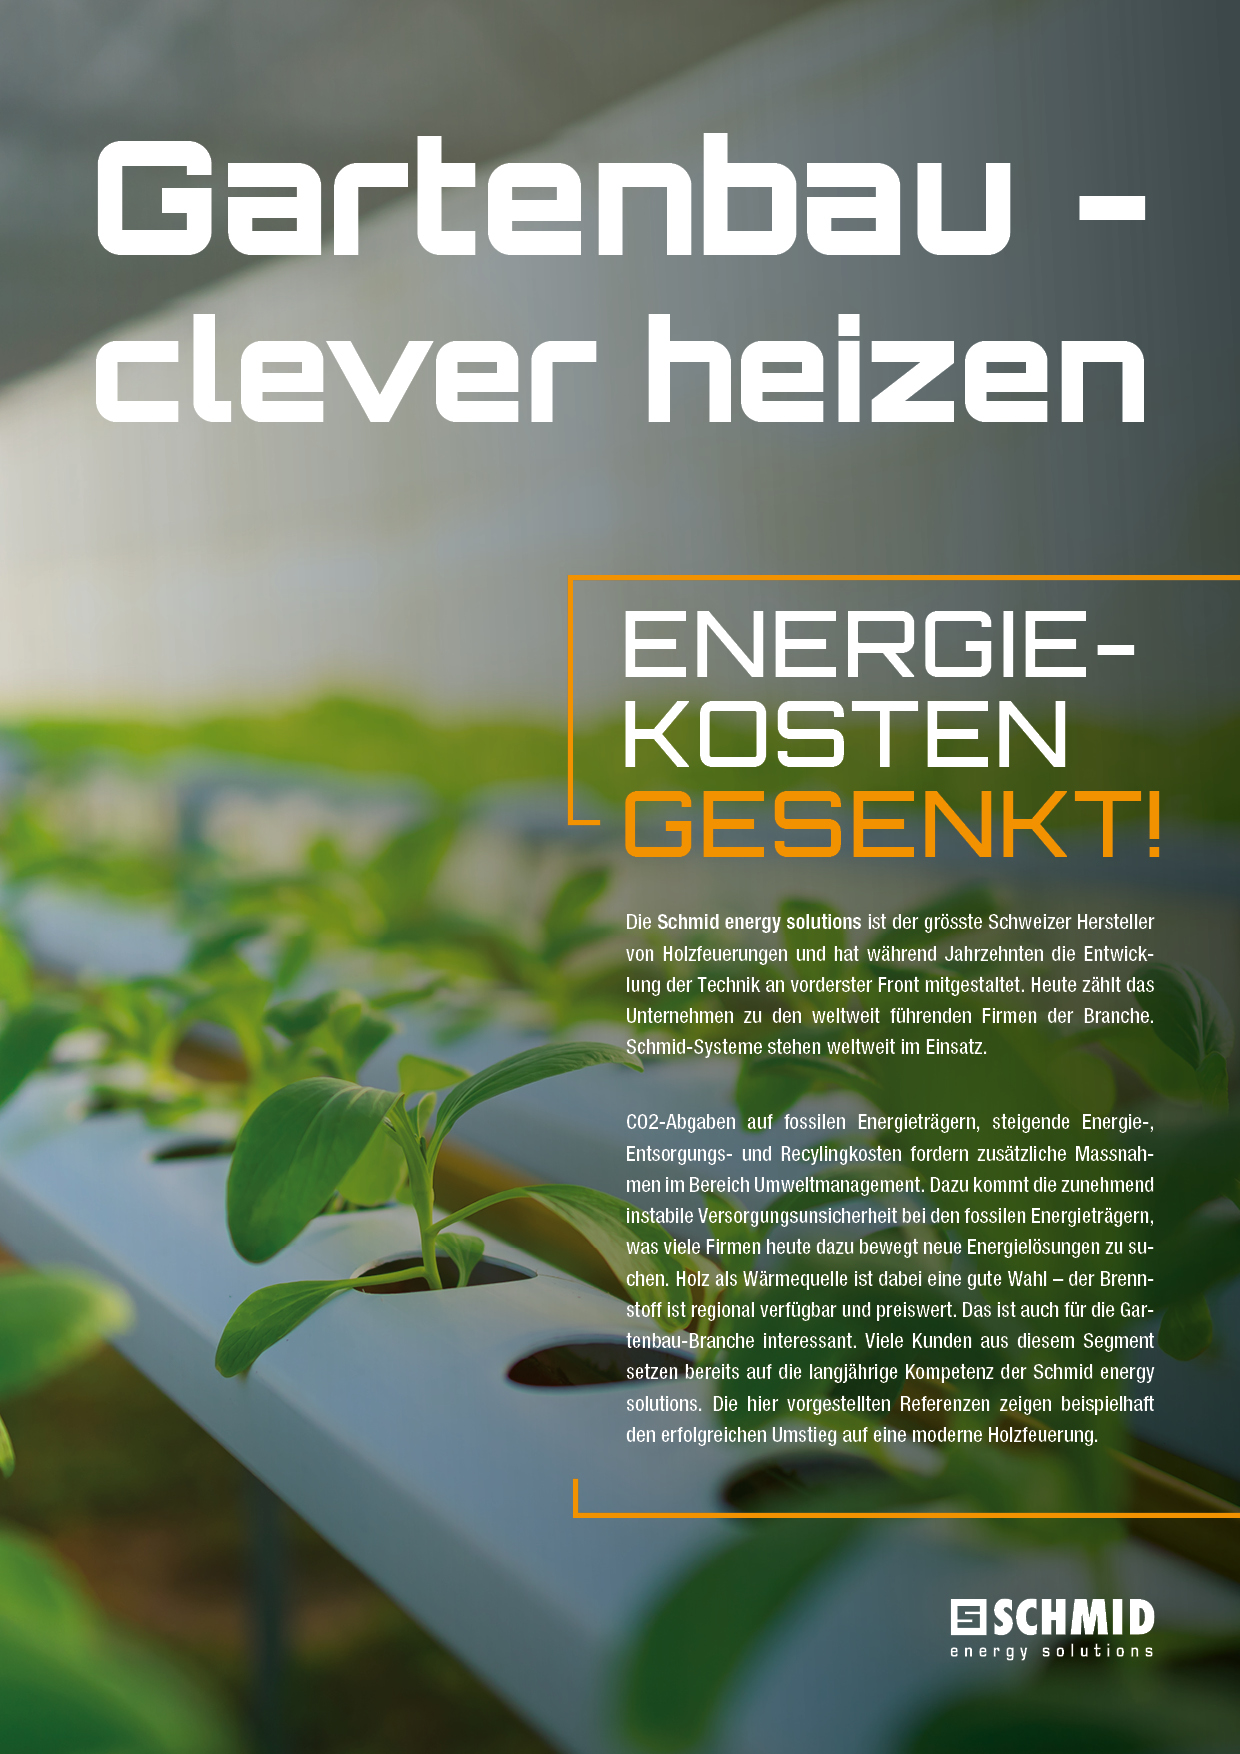 FOCUS 2022, Magazin der Schmid AG energy solutions. INSIGHTS MARKT TECHNIK NEWS Bereit für die Zukunft  –  UTSR visio